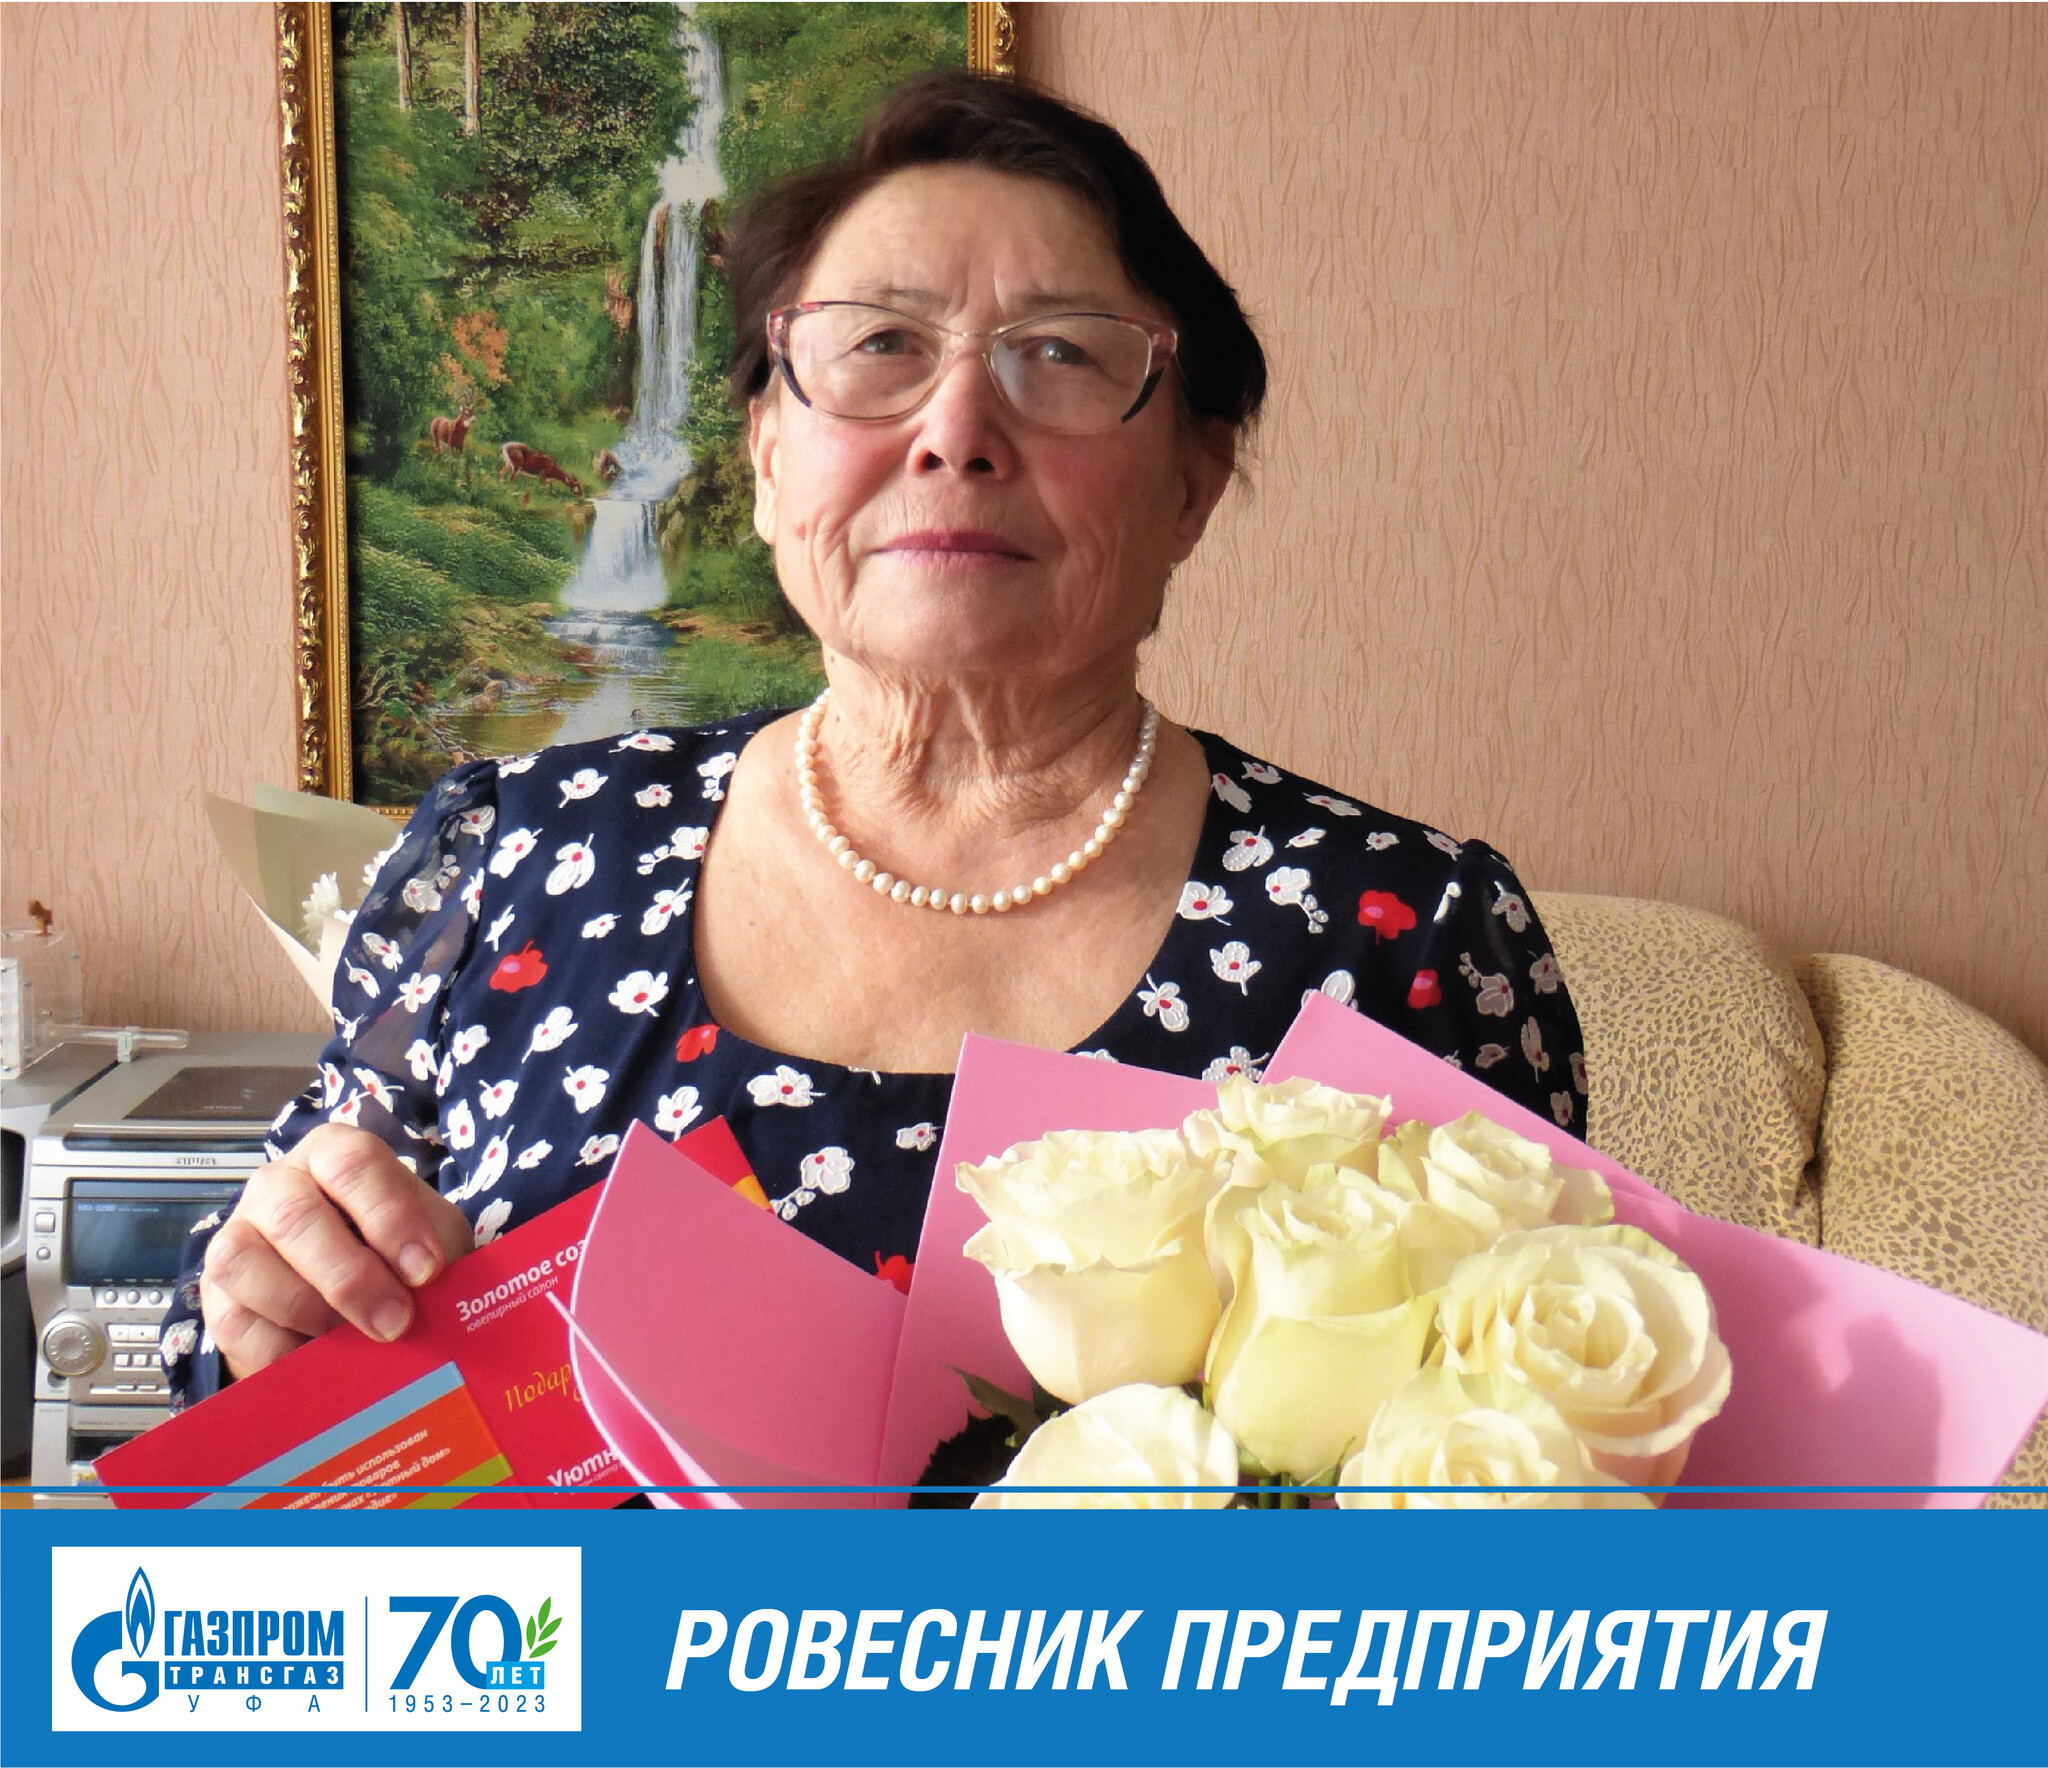 Букет цветов, сорванных с чужой клумбы, преподнесла мужу романтичная грубиянка в Ростове